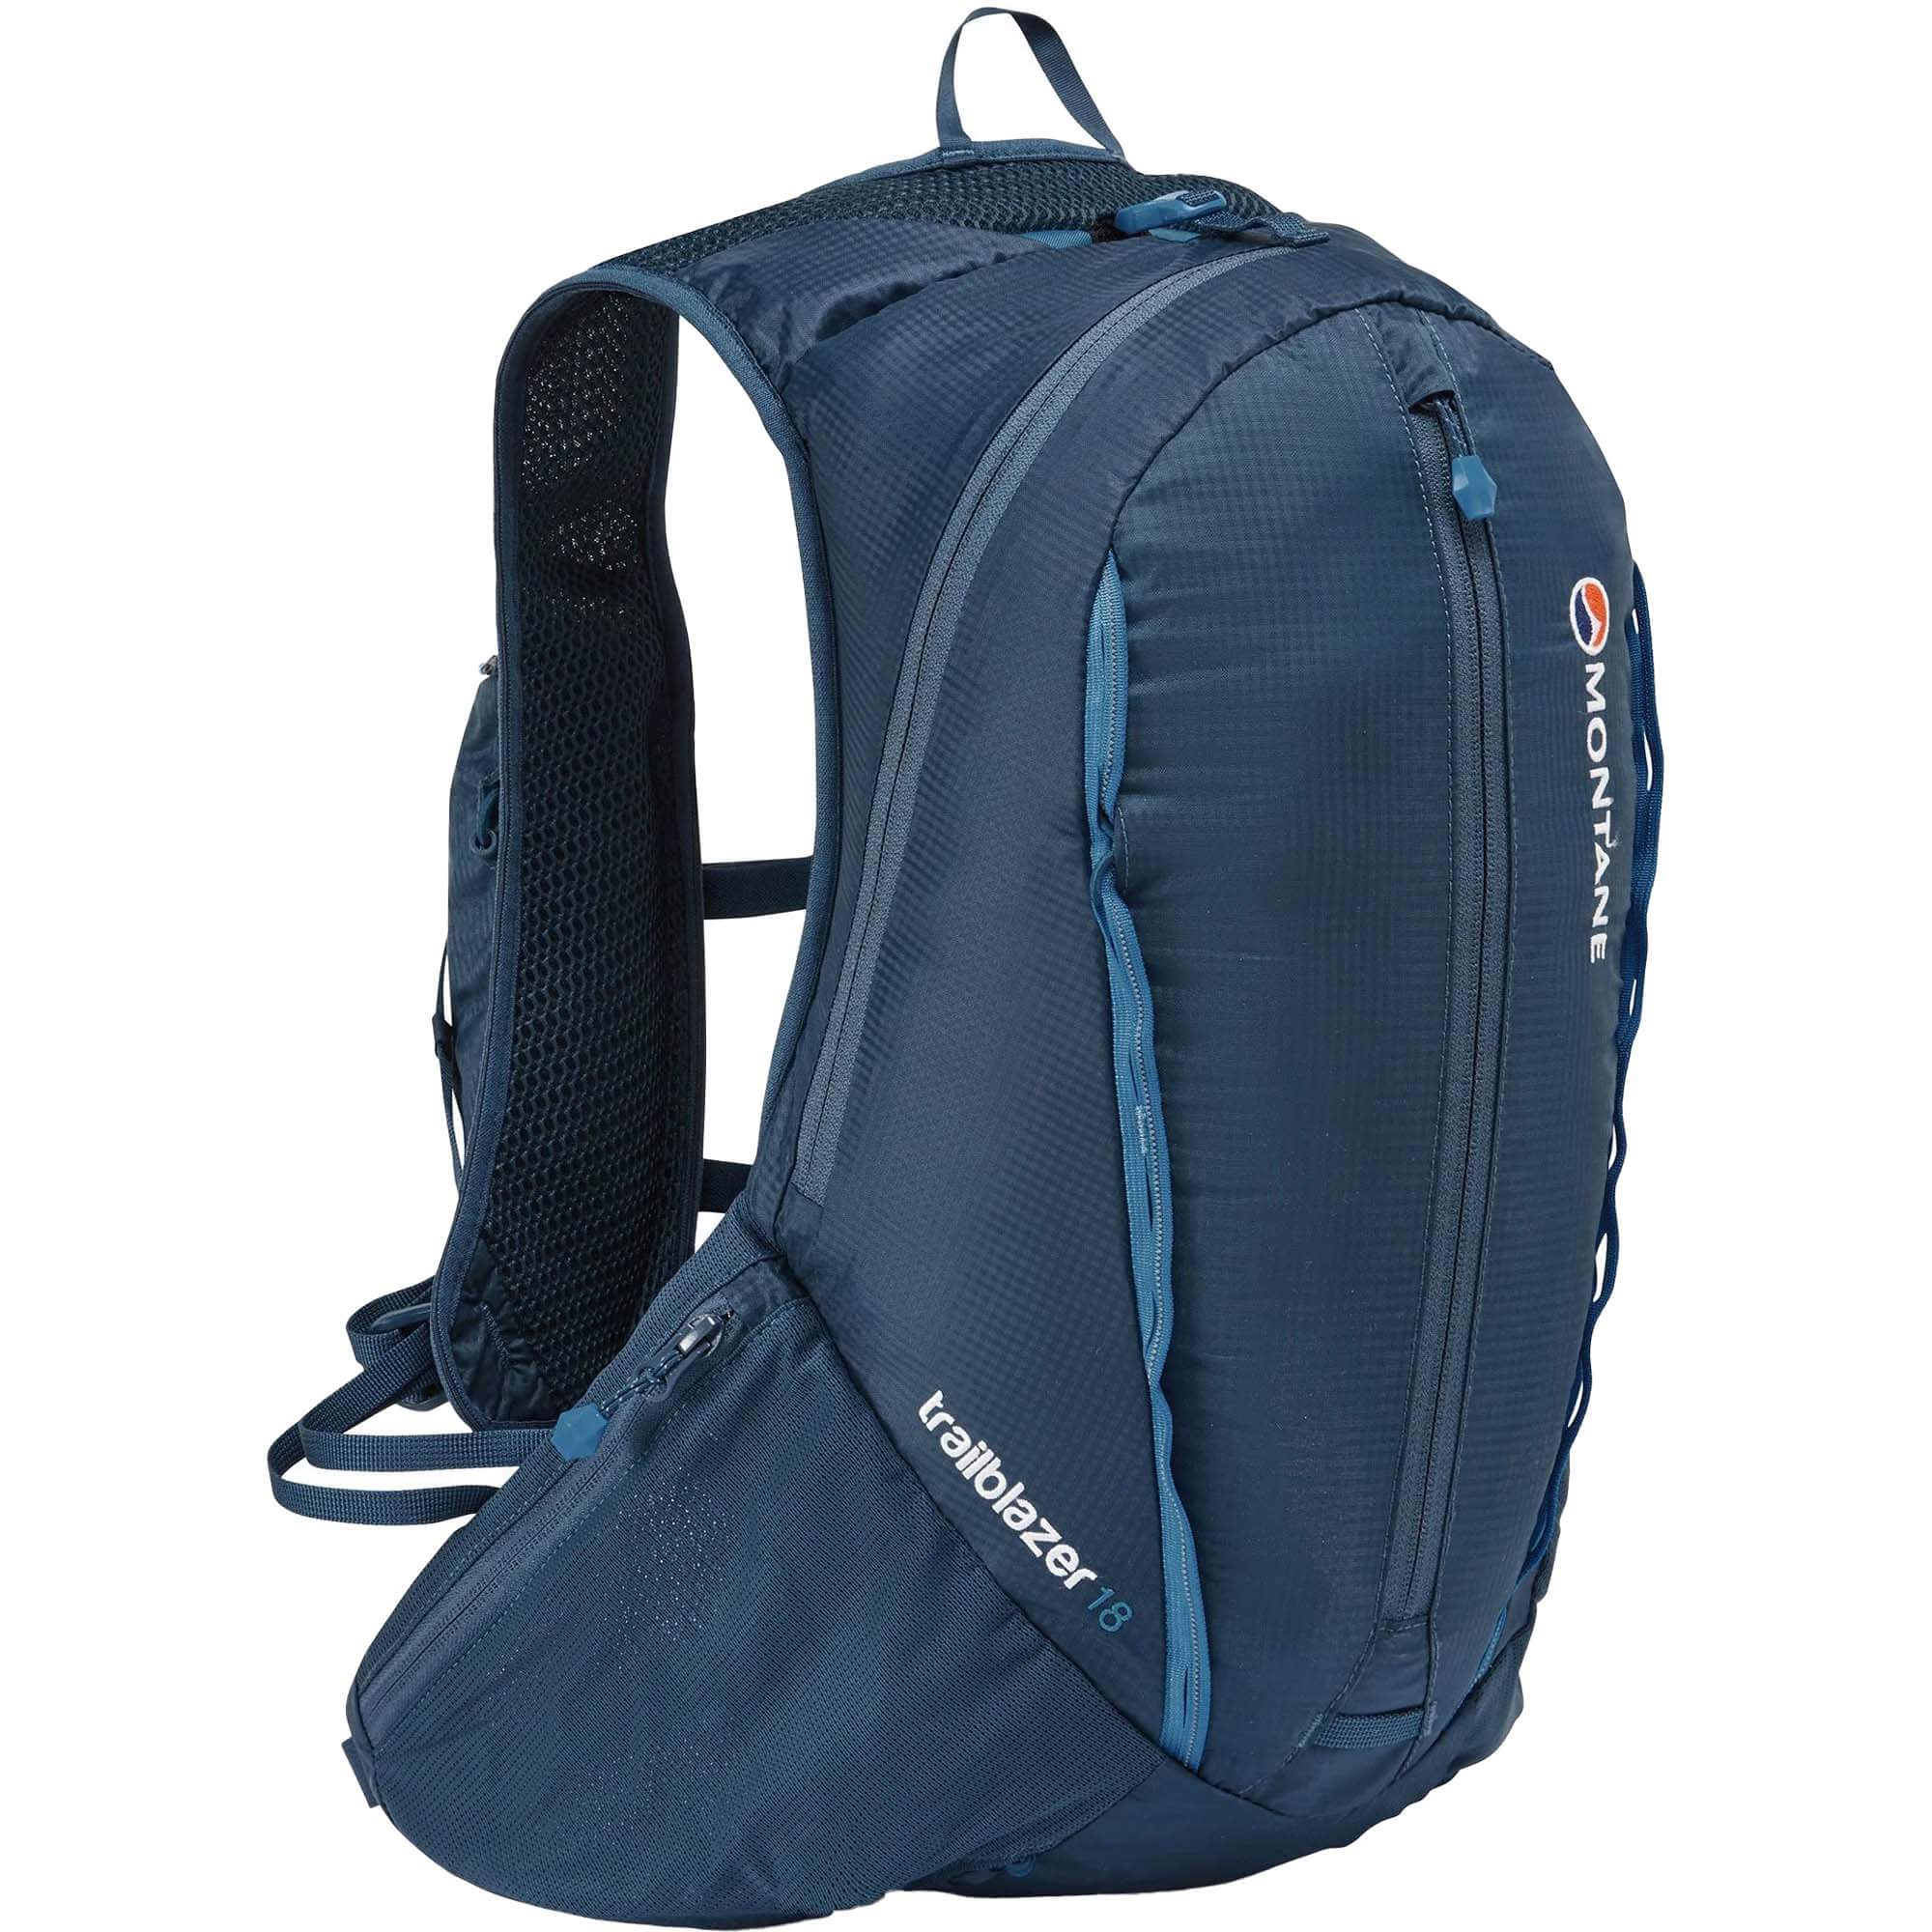 Montane Trailblazer 18 Technical Backpack